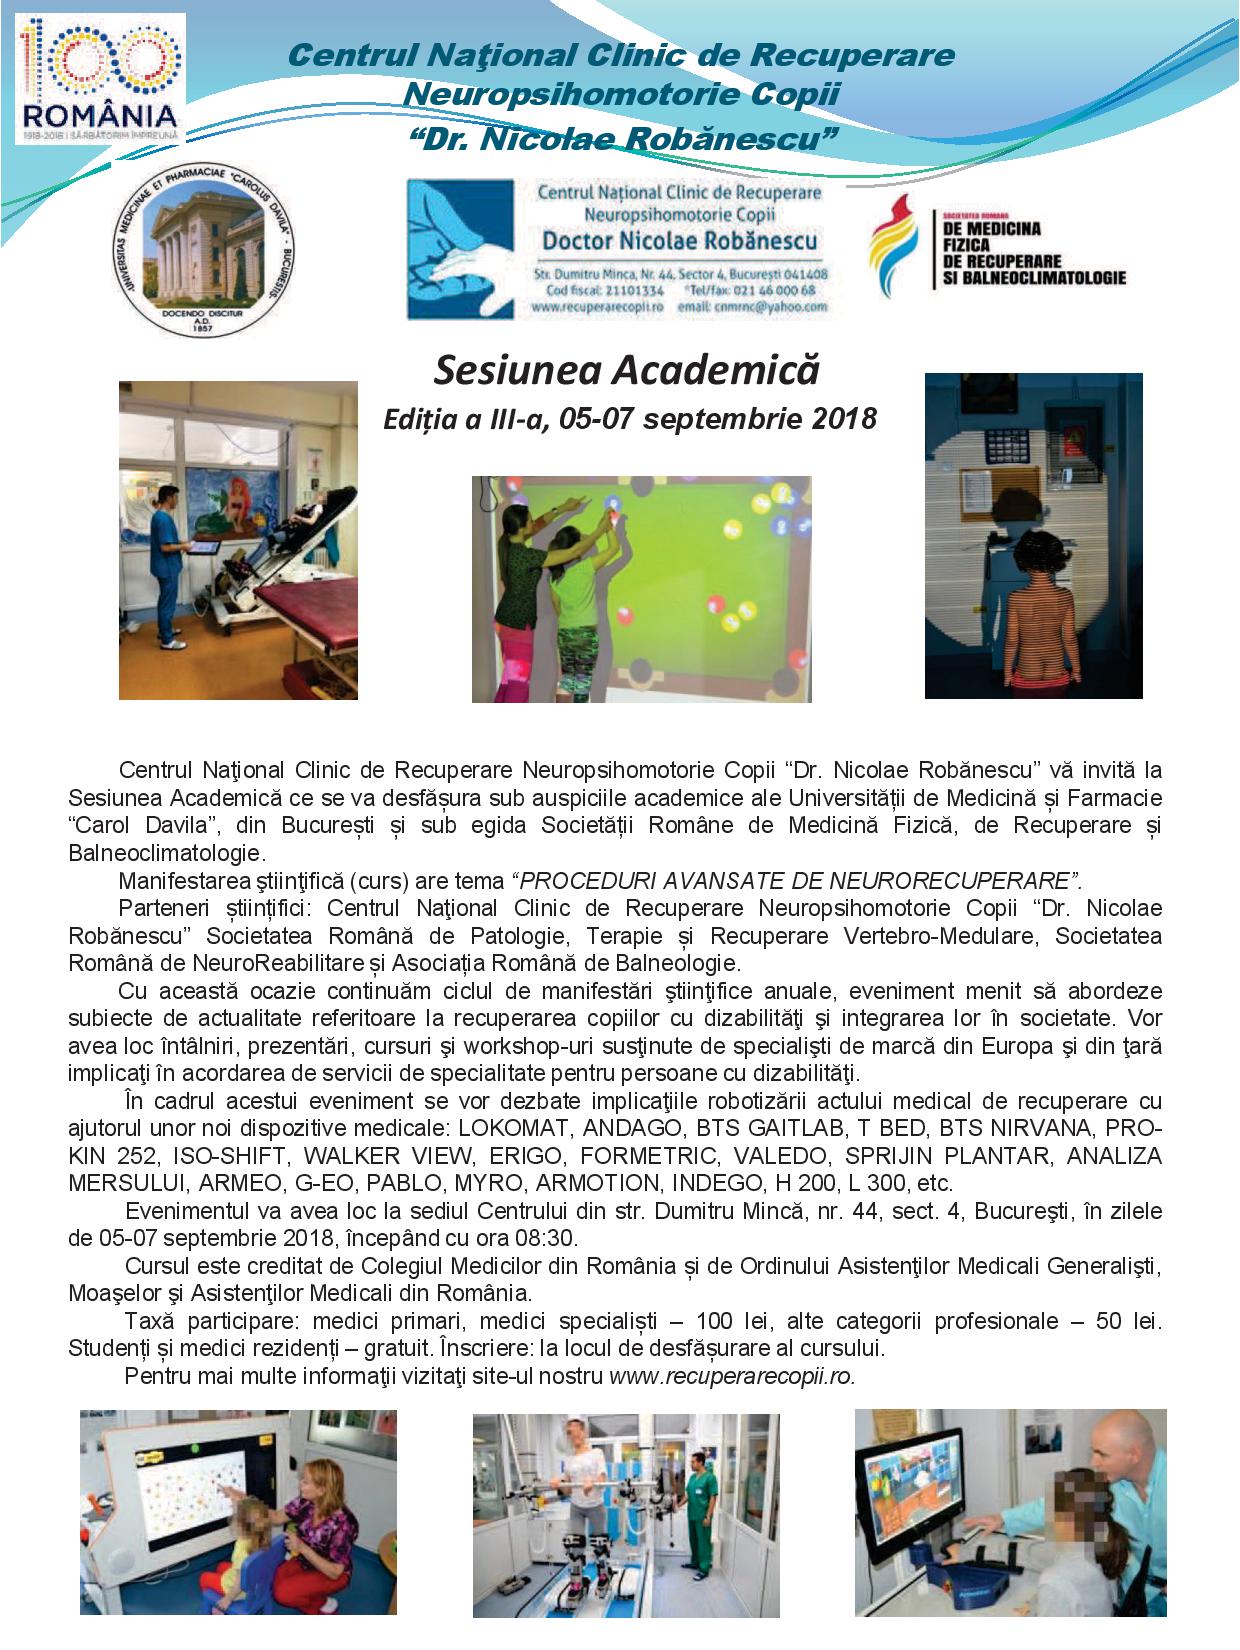 SESIUNEA ACADEMICĂ Ediția a III-a: 05-07 Septembrie 2018, București Invitatie